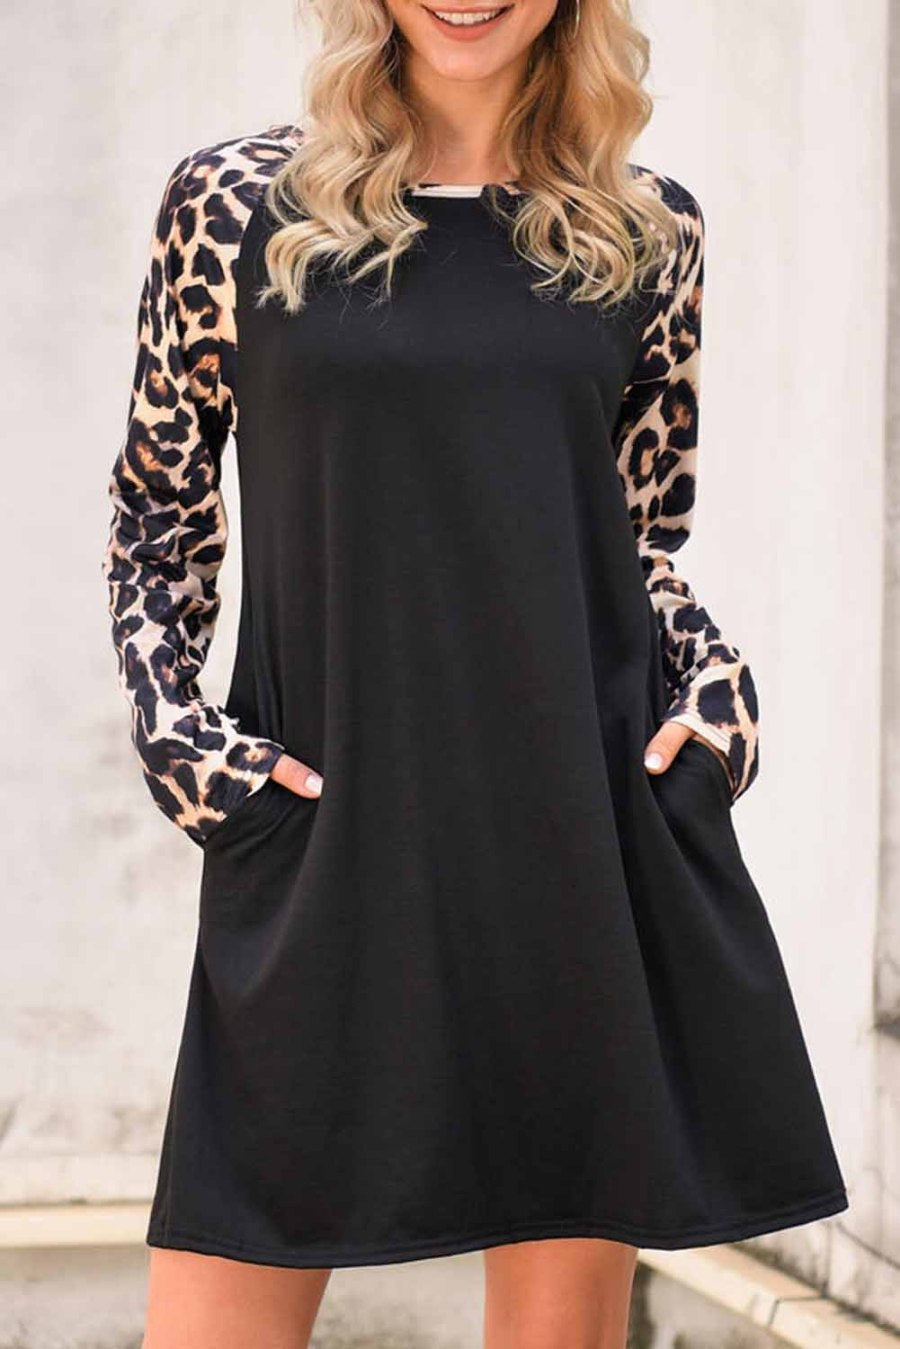 Black/Leopard Long Sleeve Top/Dress